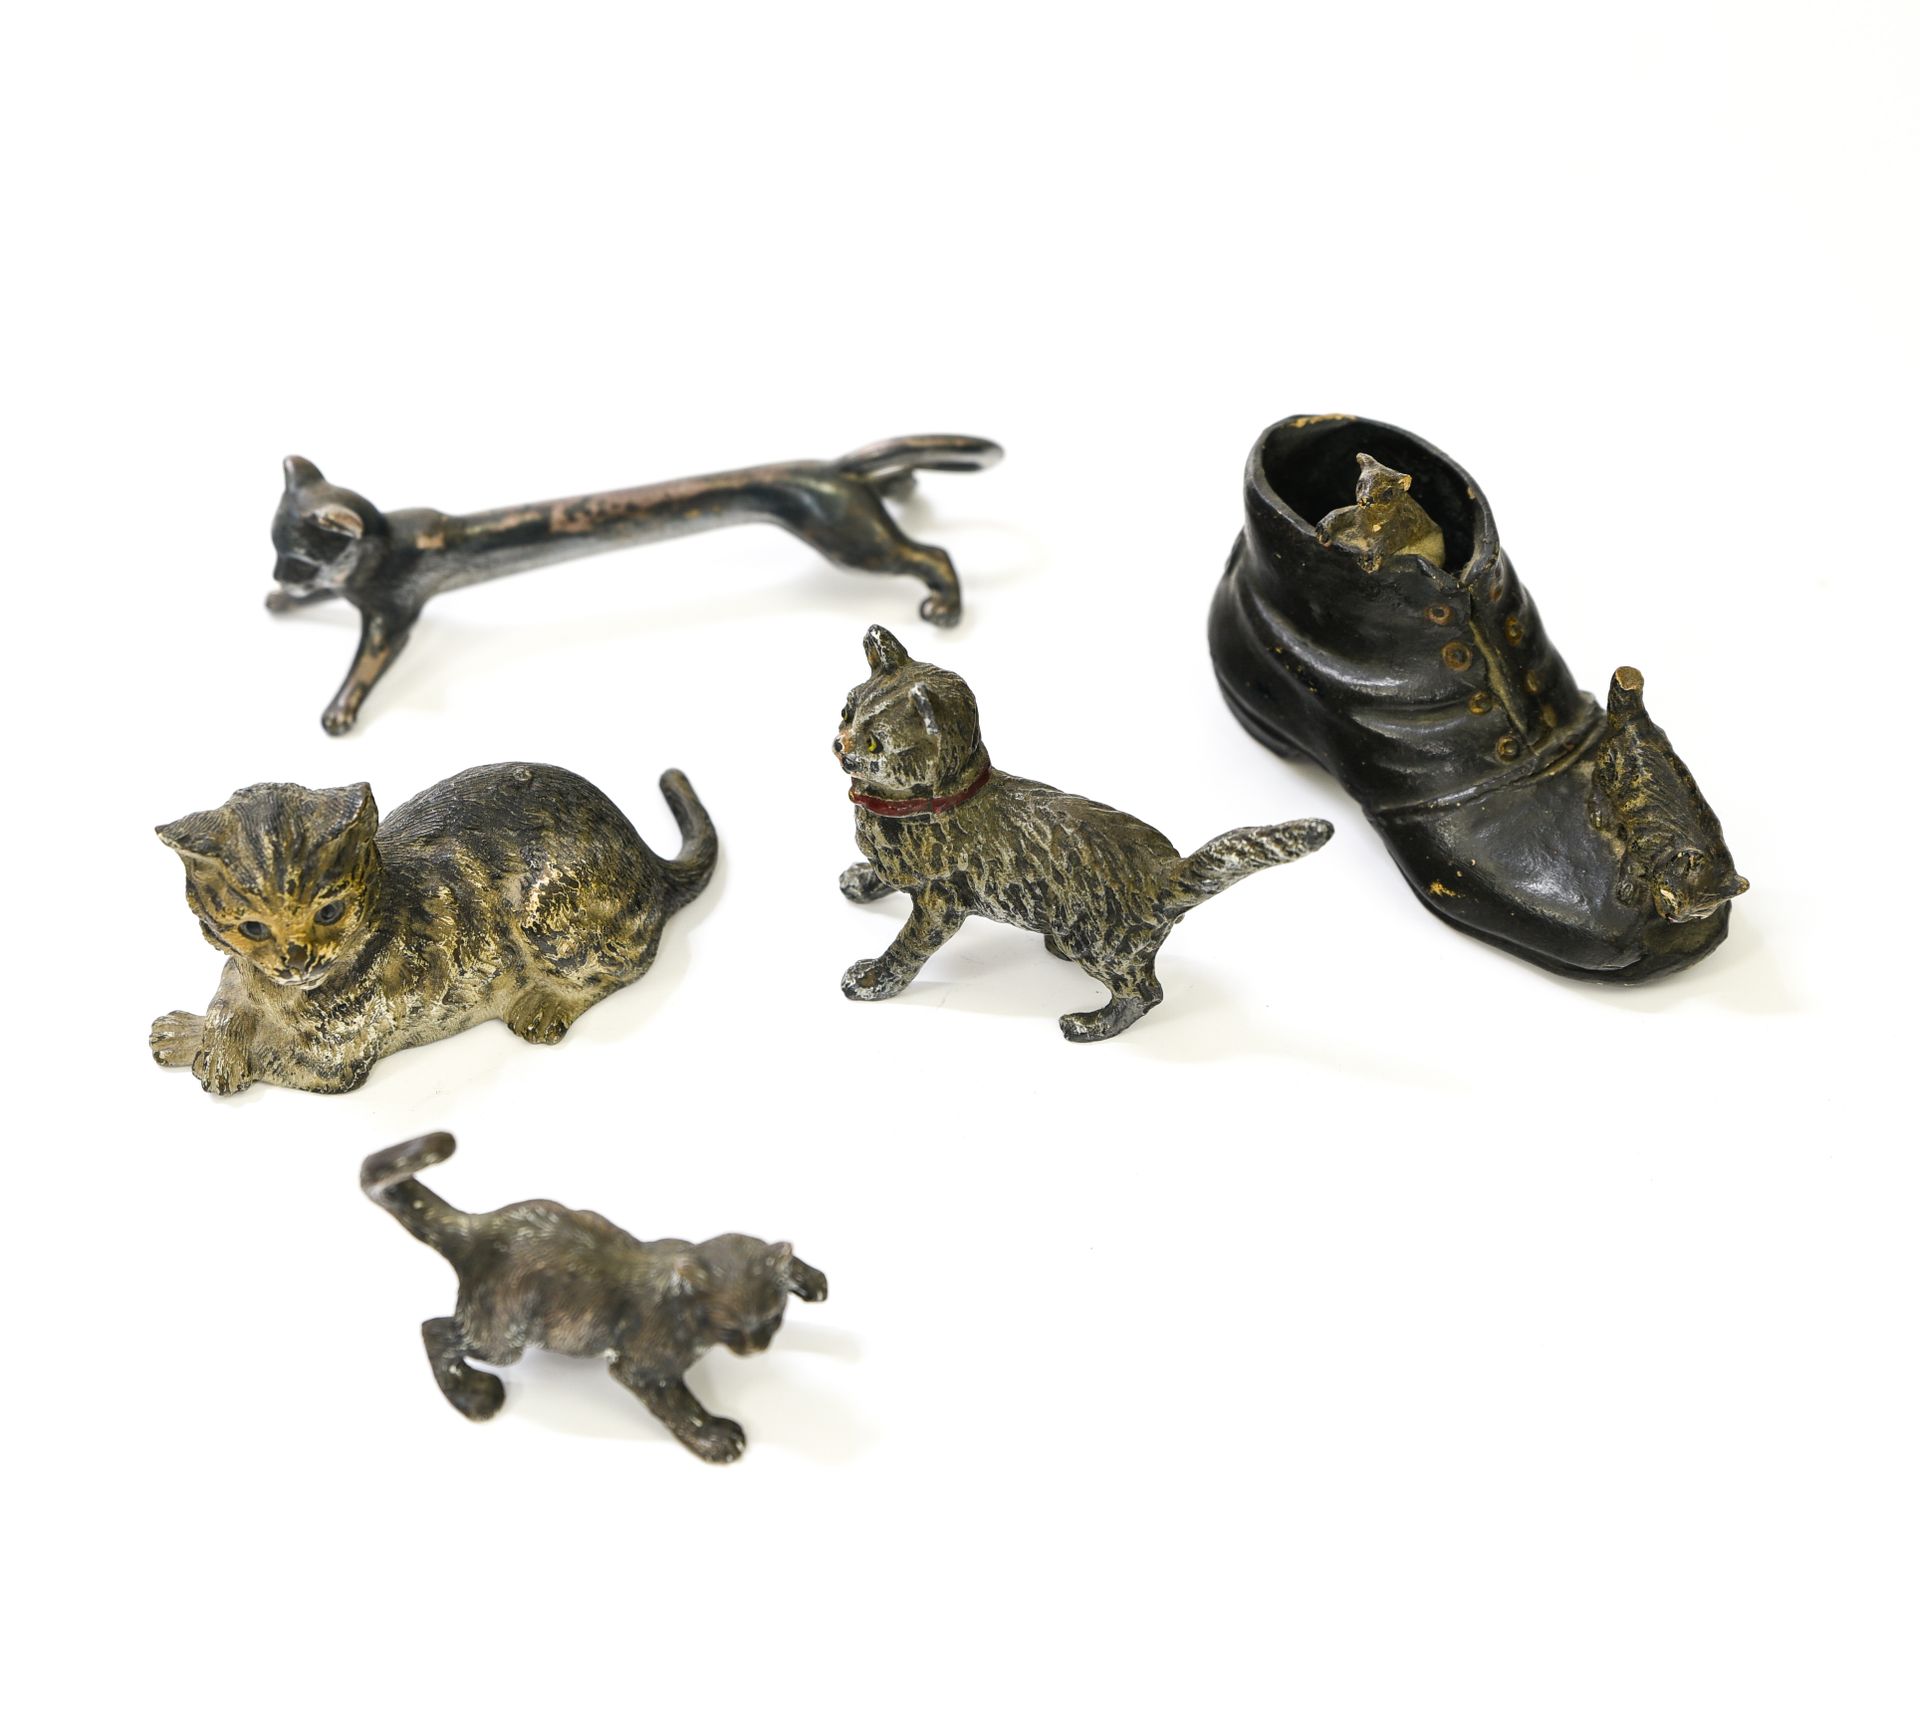 Collection de chats AUSTRIA, VIENA

Colección de gatos



dos en bronce de Viena&hellip;